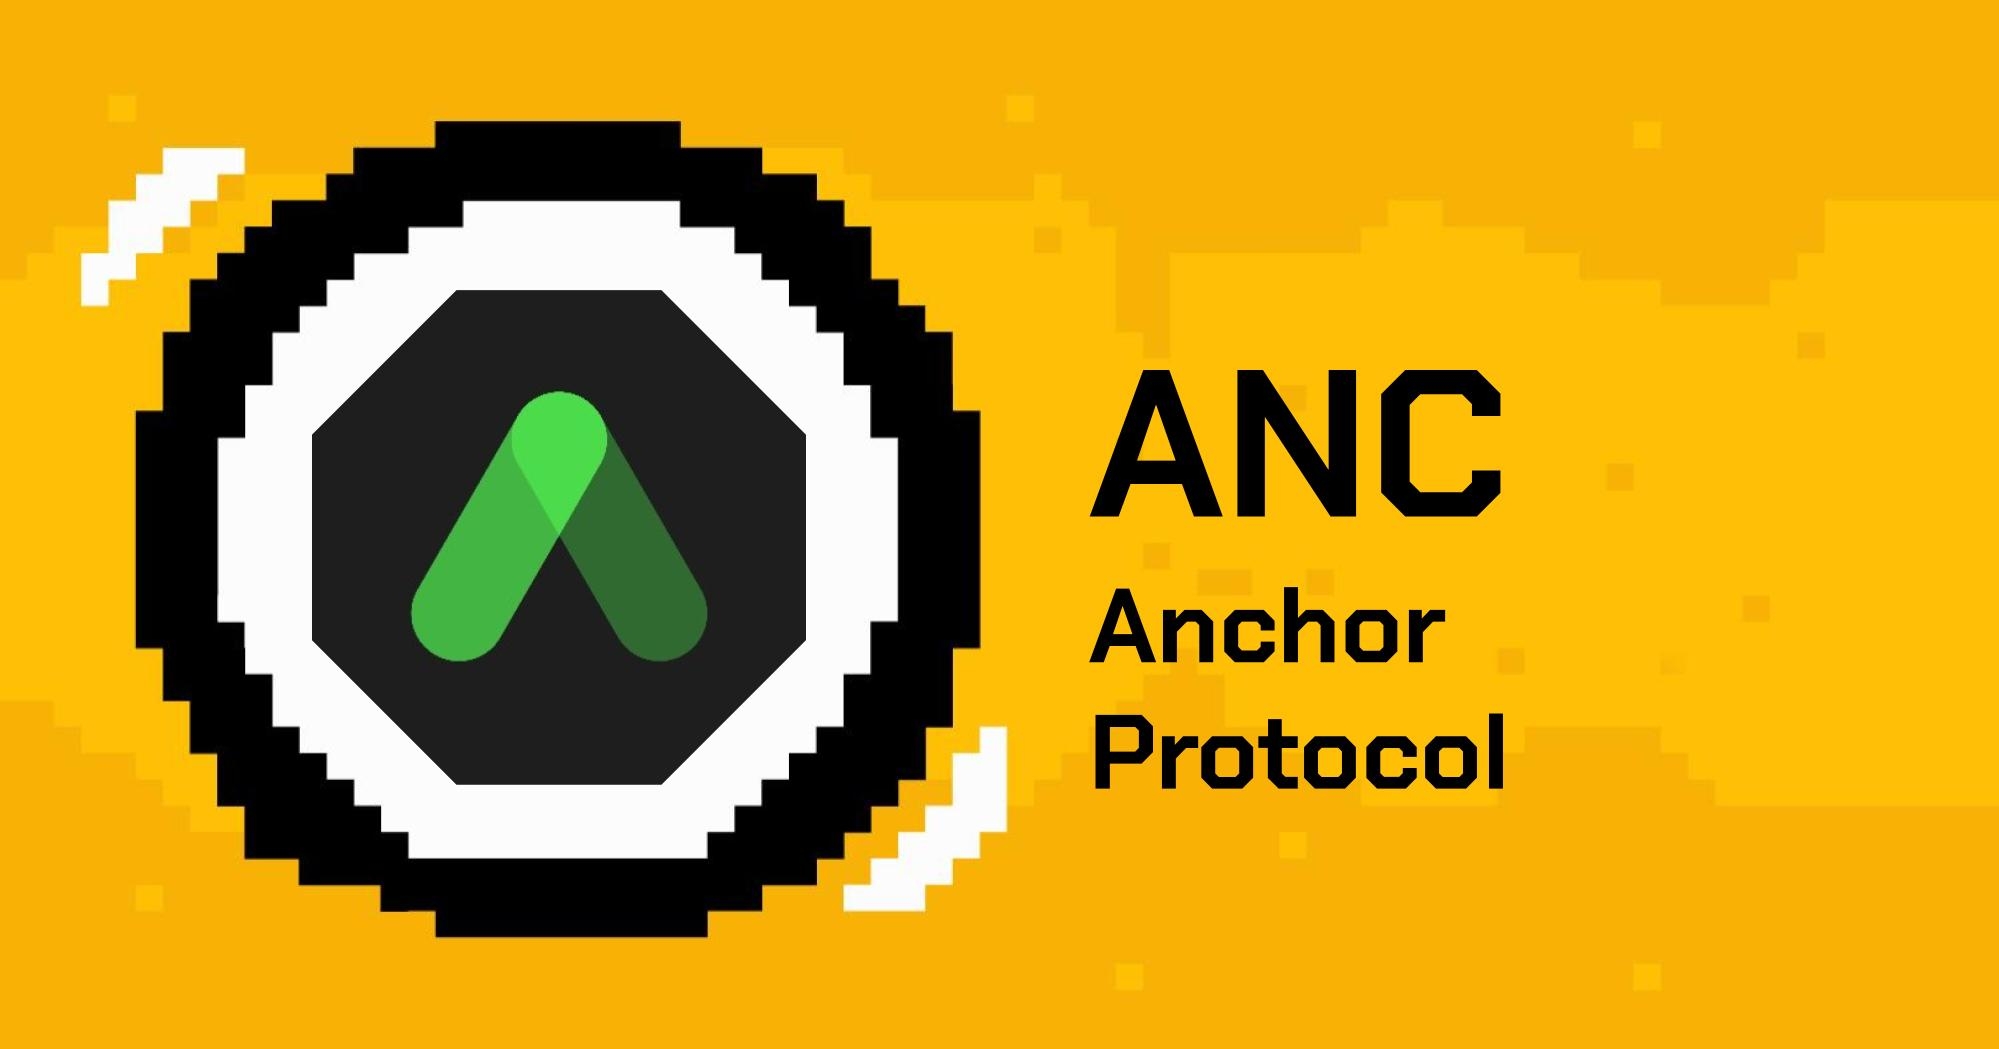 anchor anc token